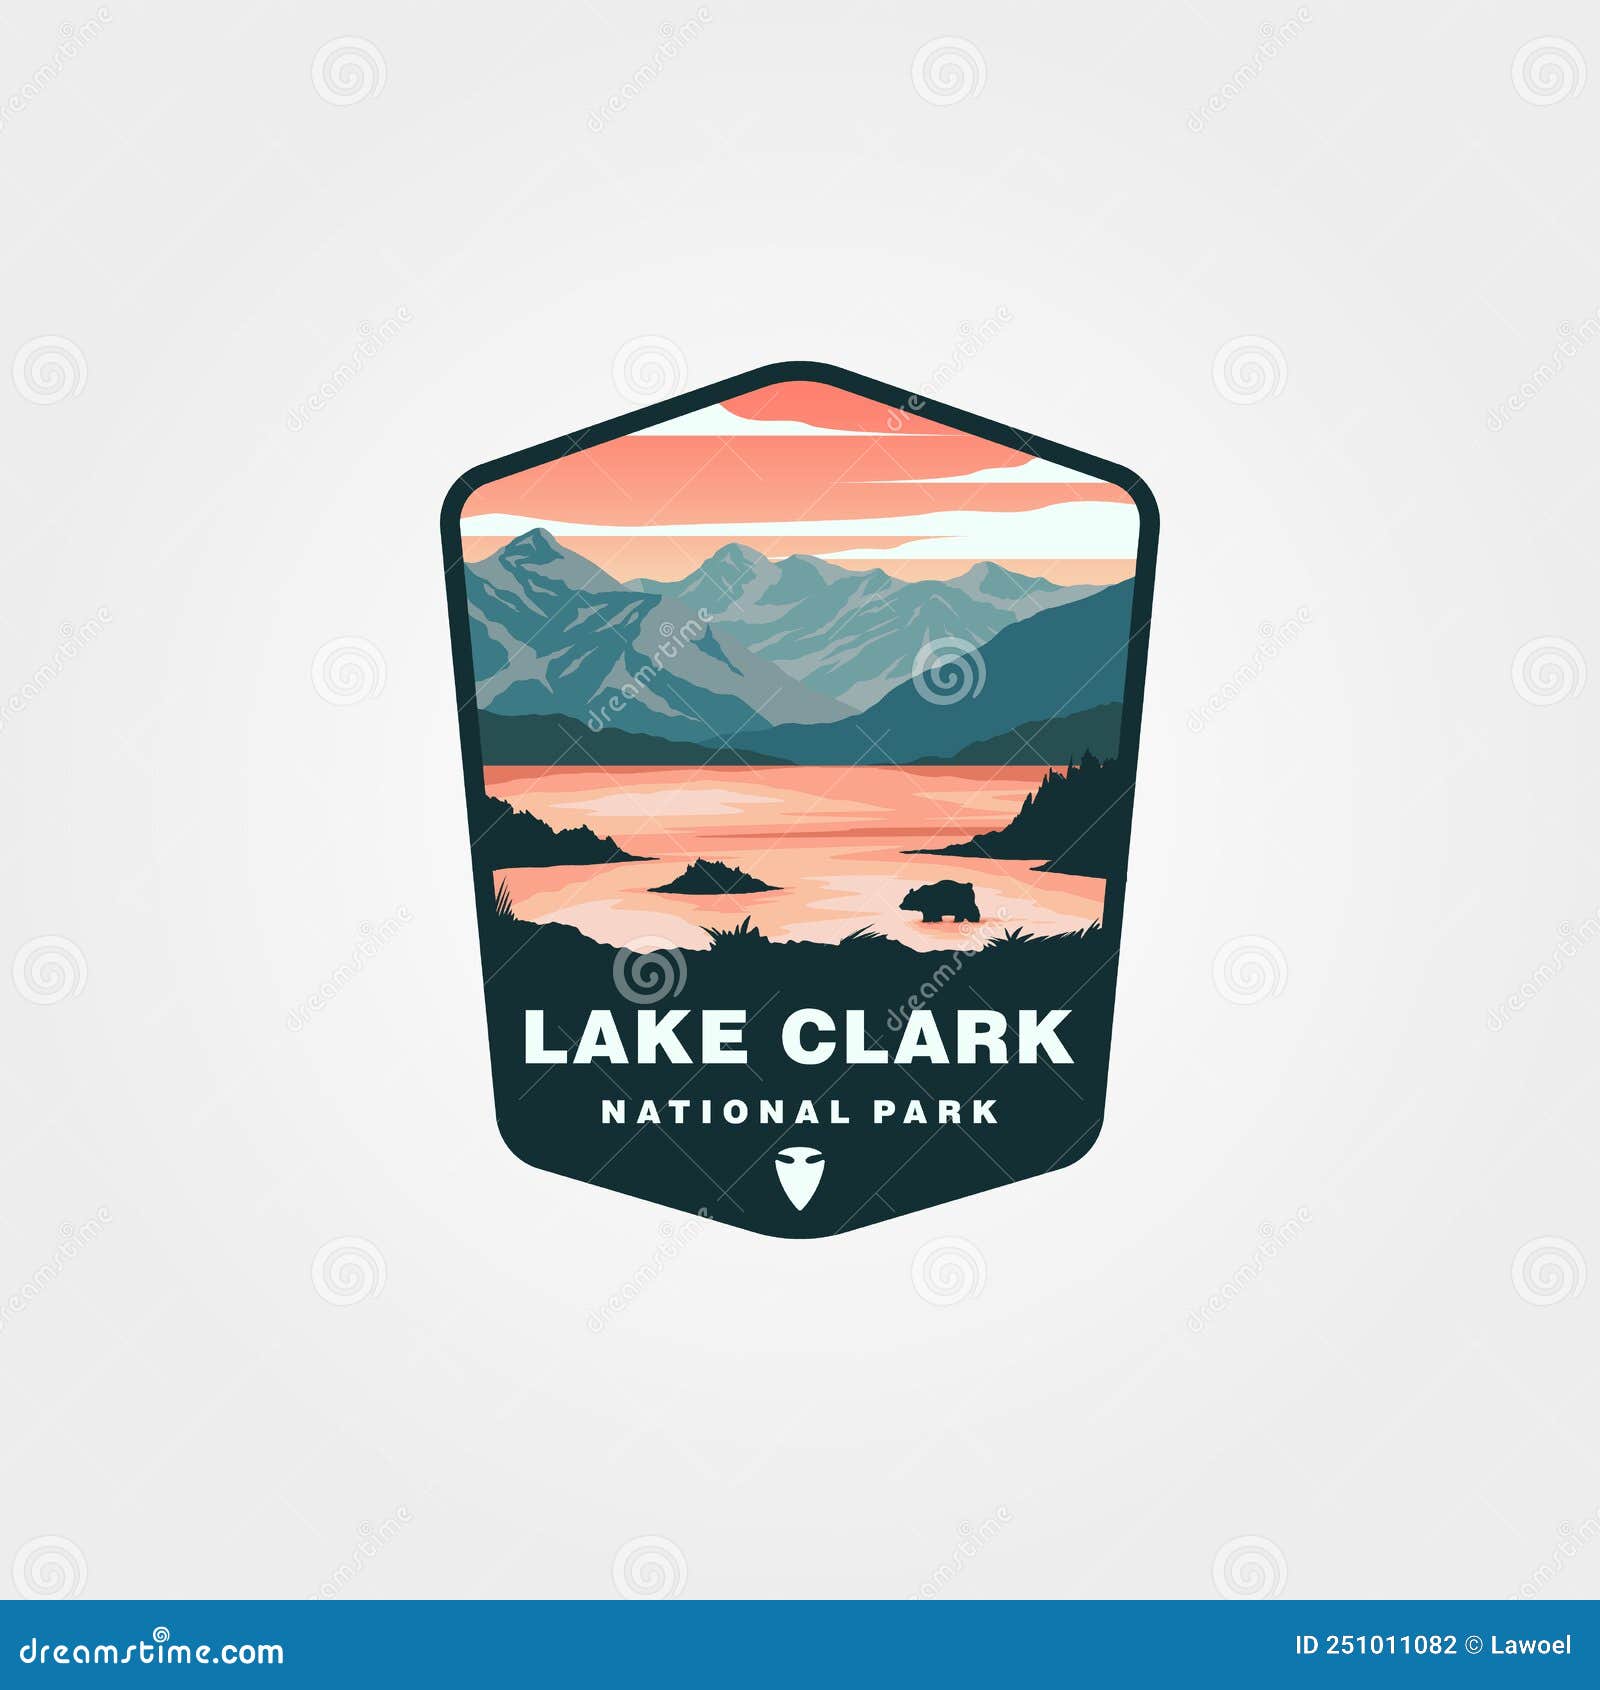 lake clark national park logo patch   , vintage national park logo 